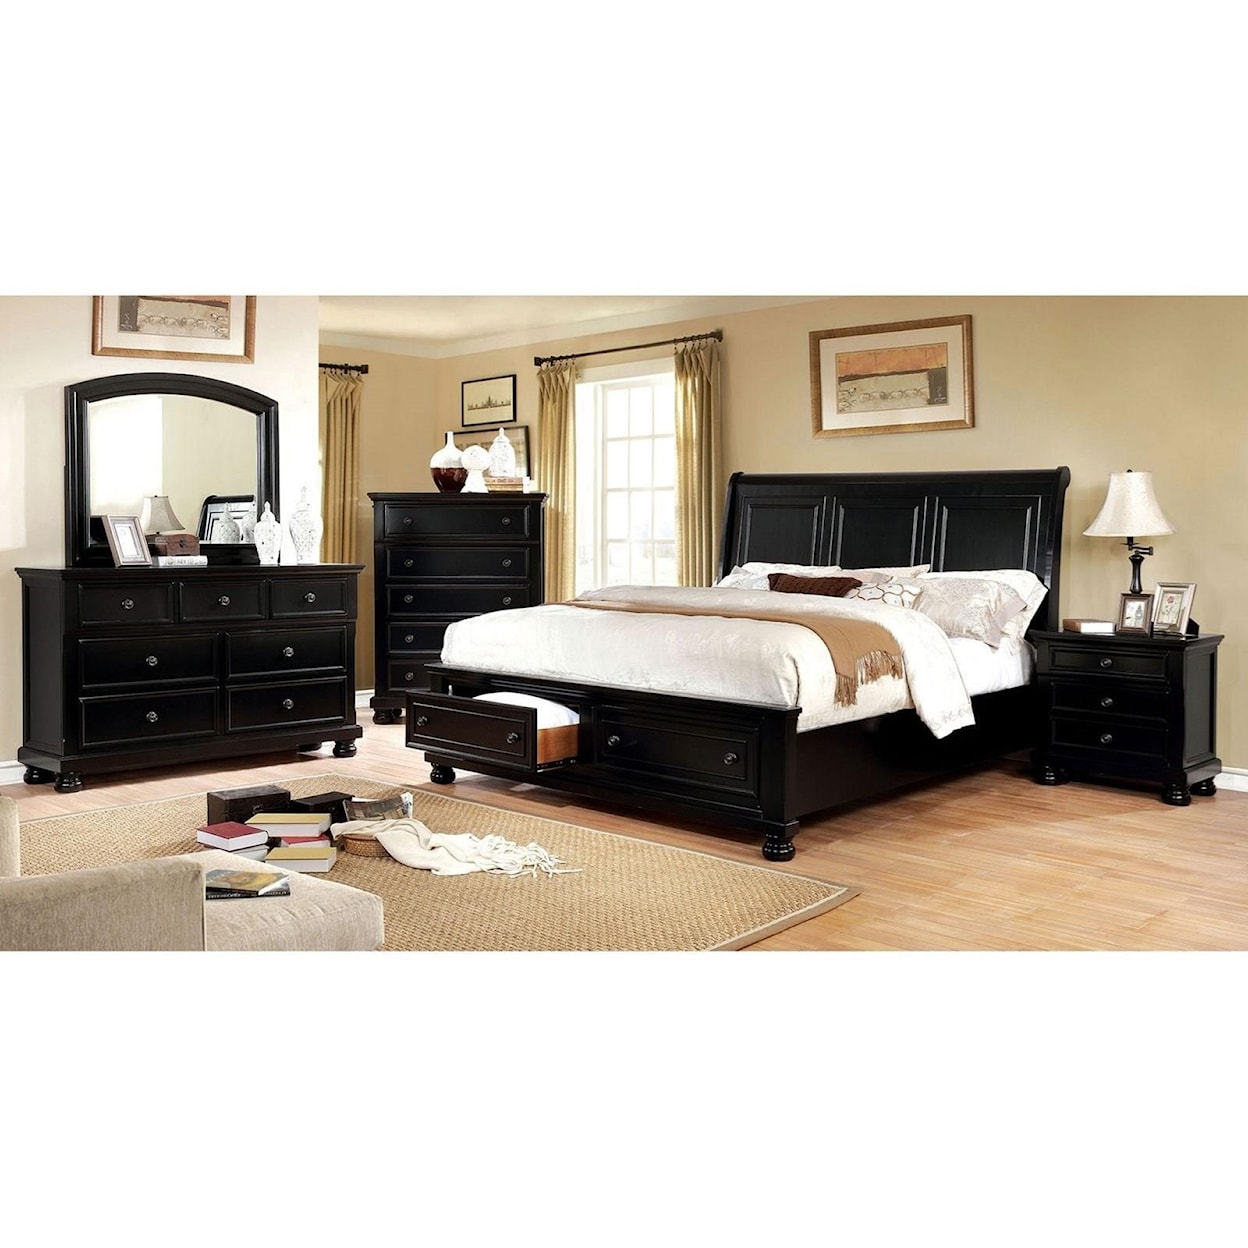 Furniture of America Castor King Bed